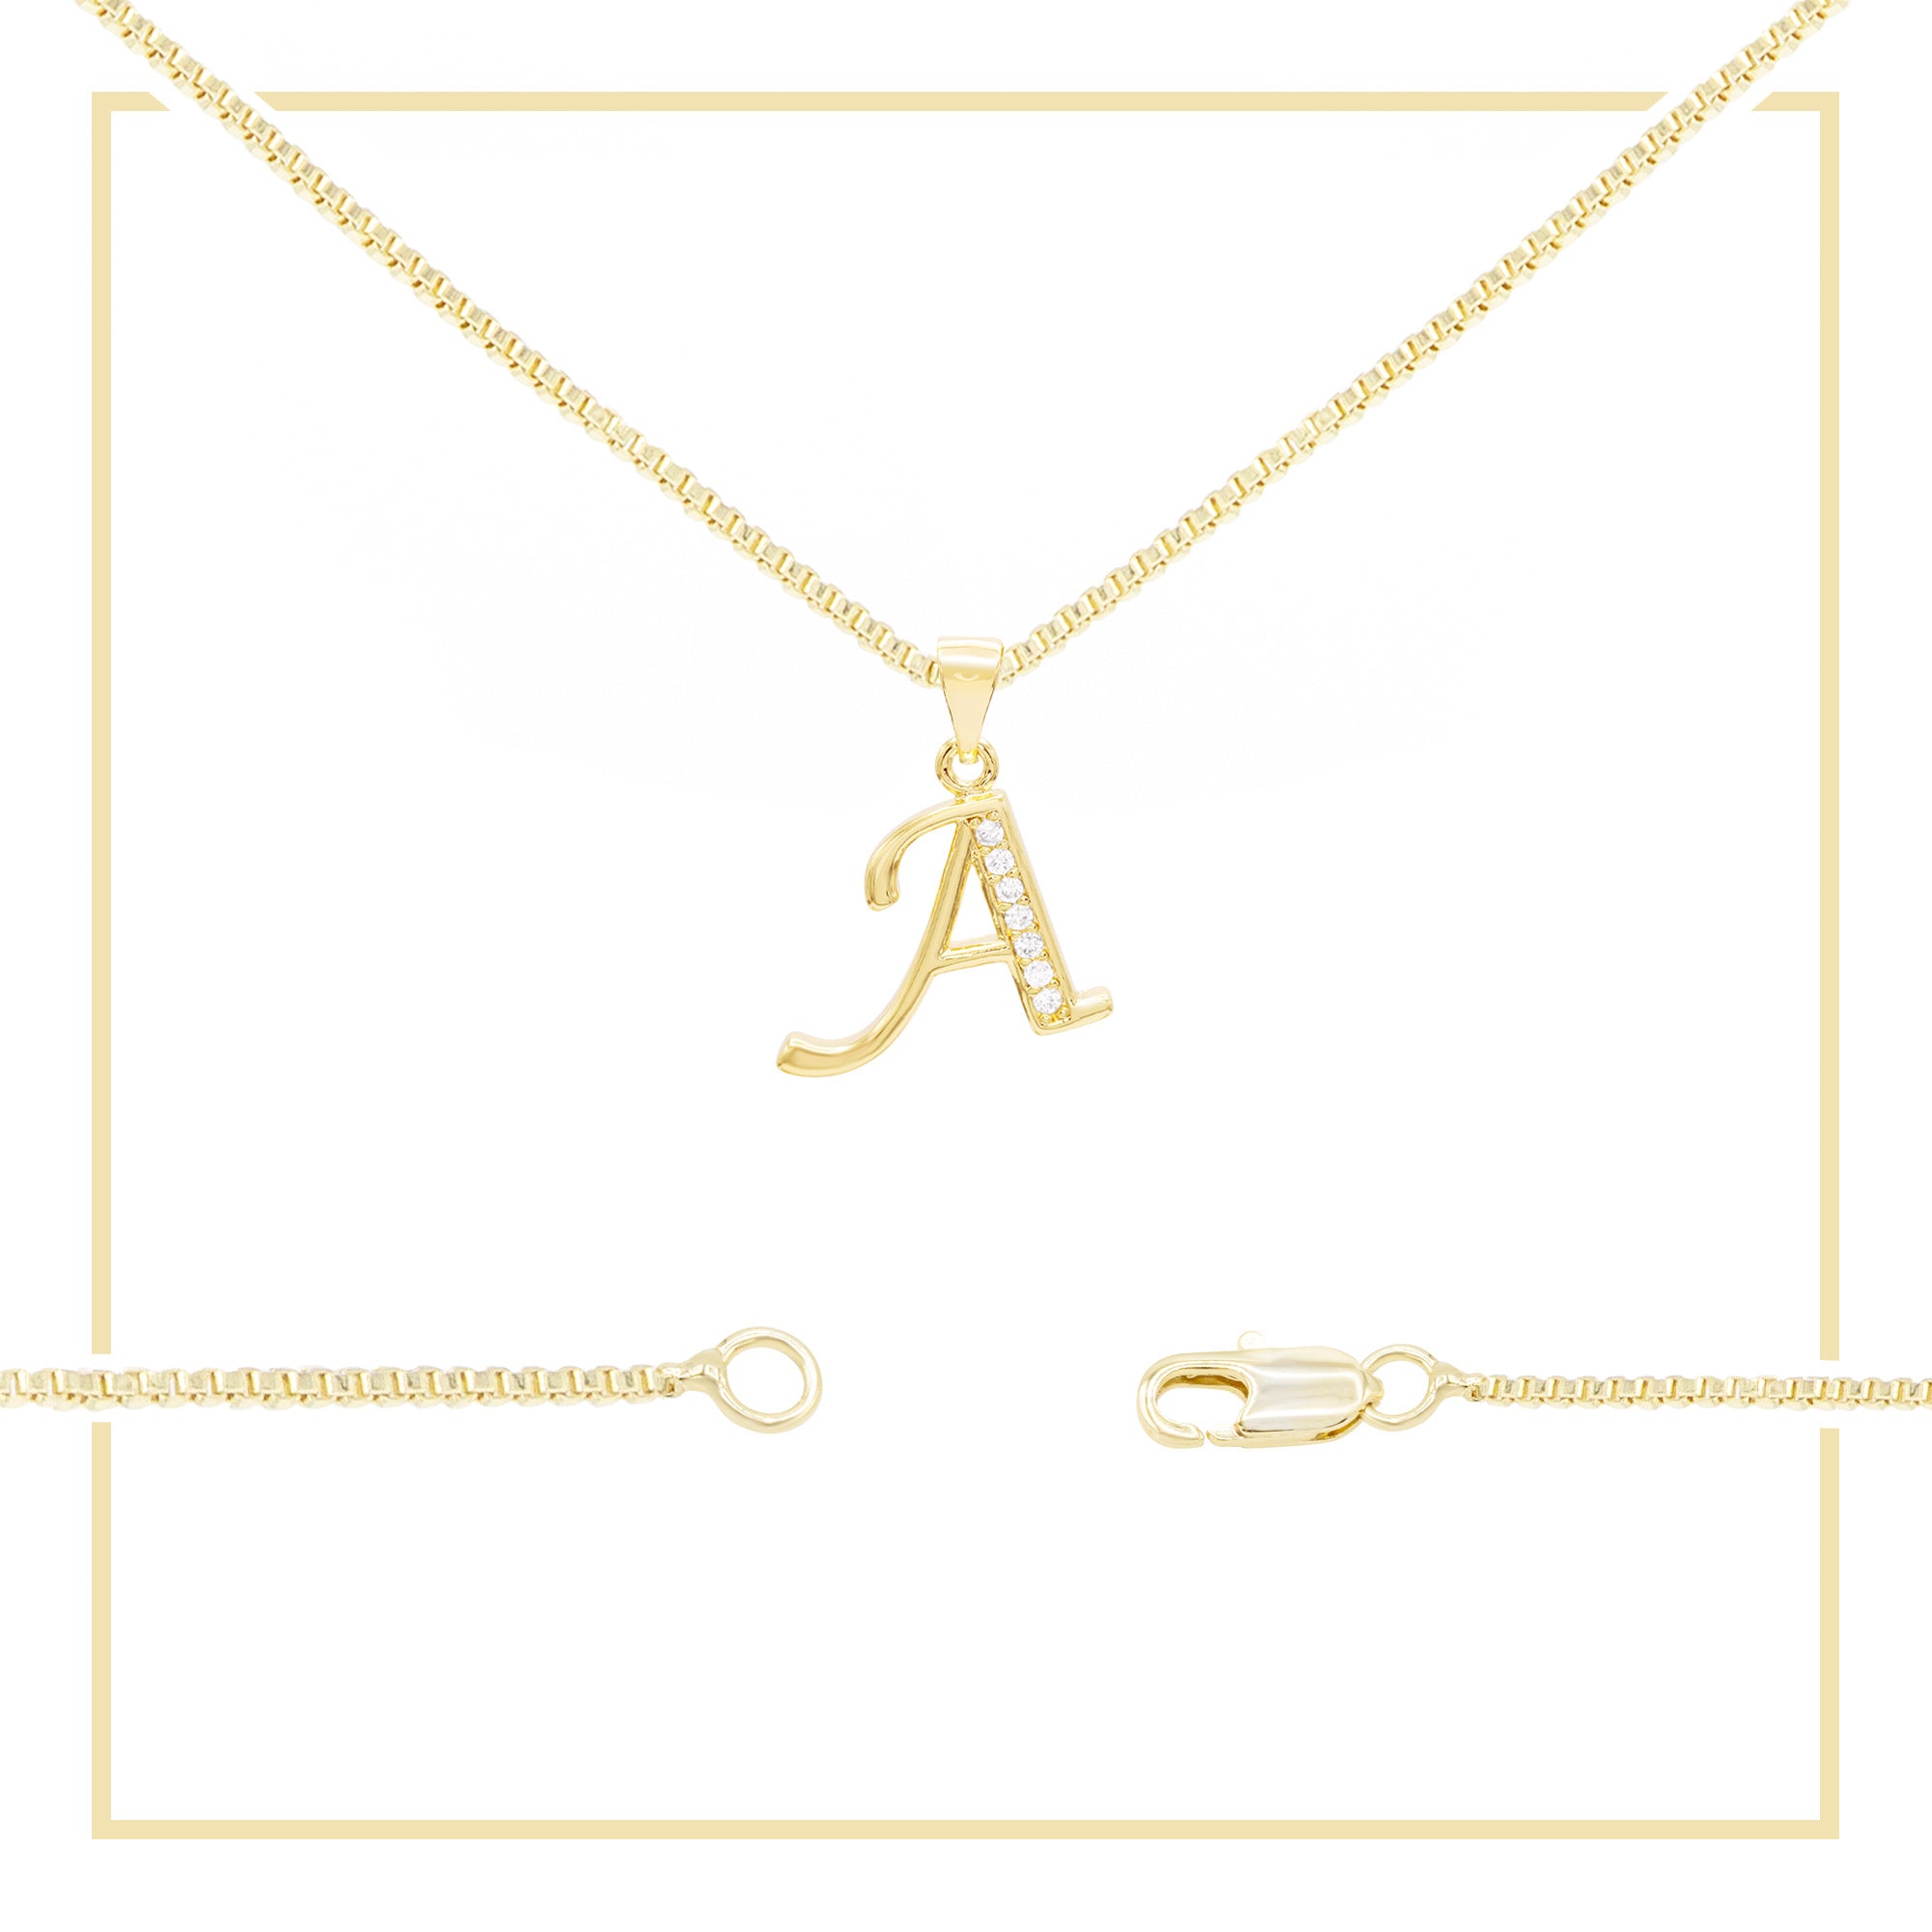 10 PCS Alloy Letter N Bracelet Snake Chain Charm Bracelets(Gold)